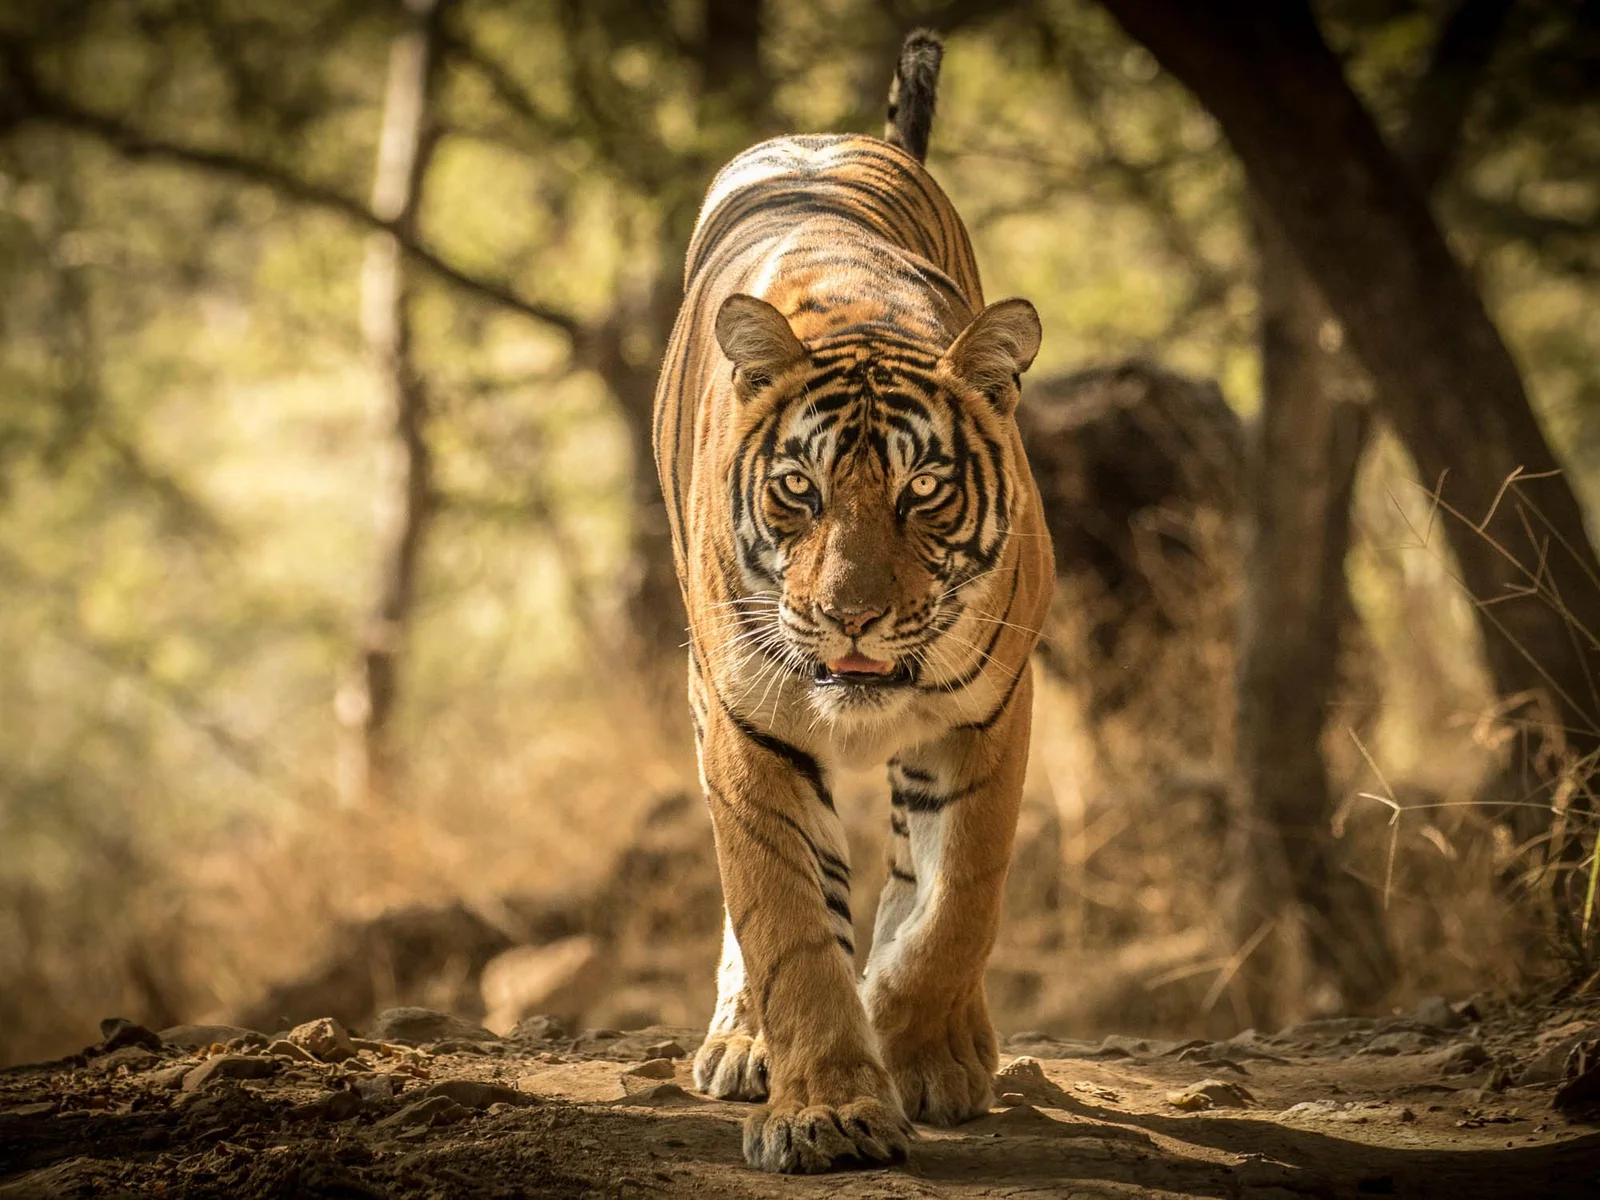 Tiger-at-Ranthambhore-National-Park-Rajasthan-India